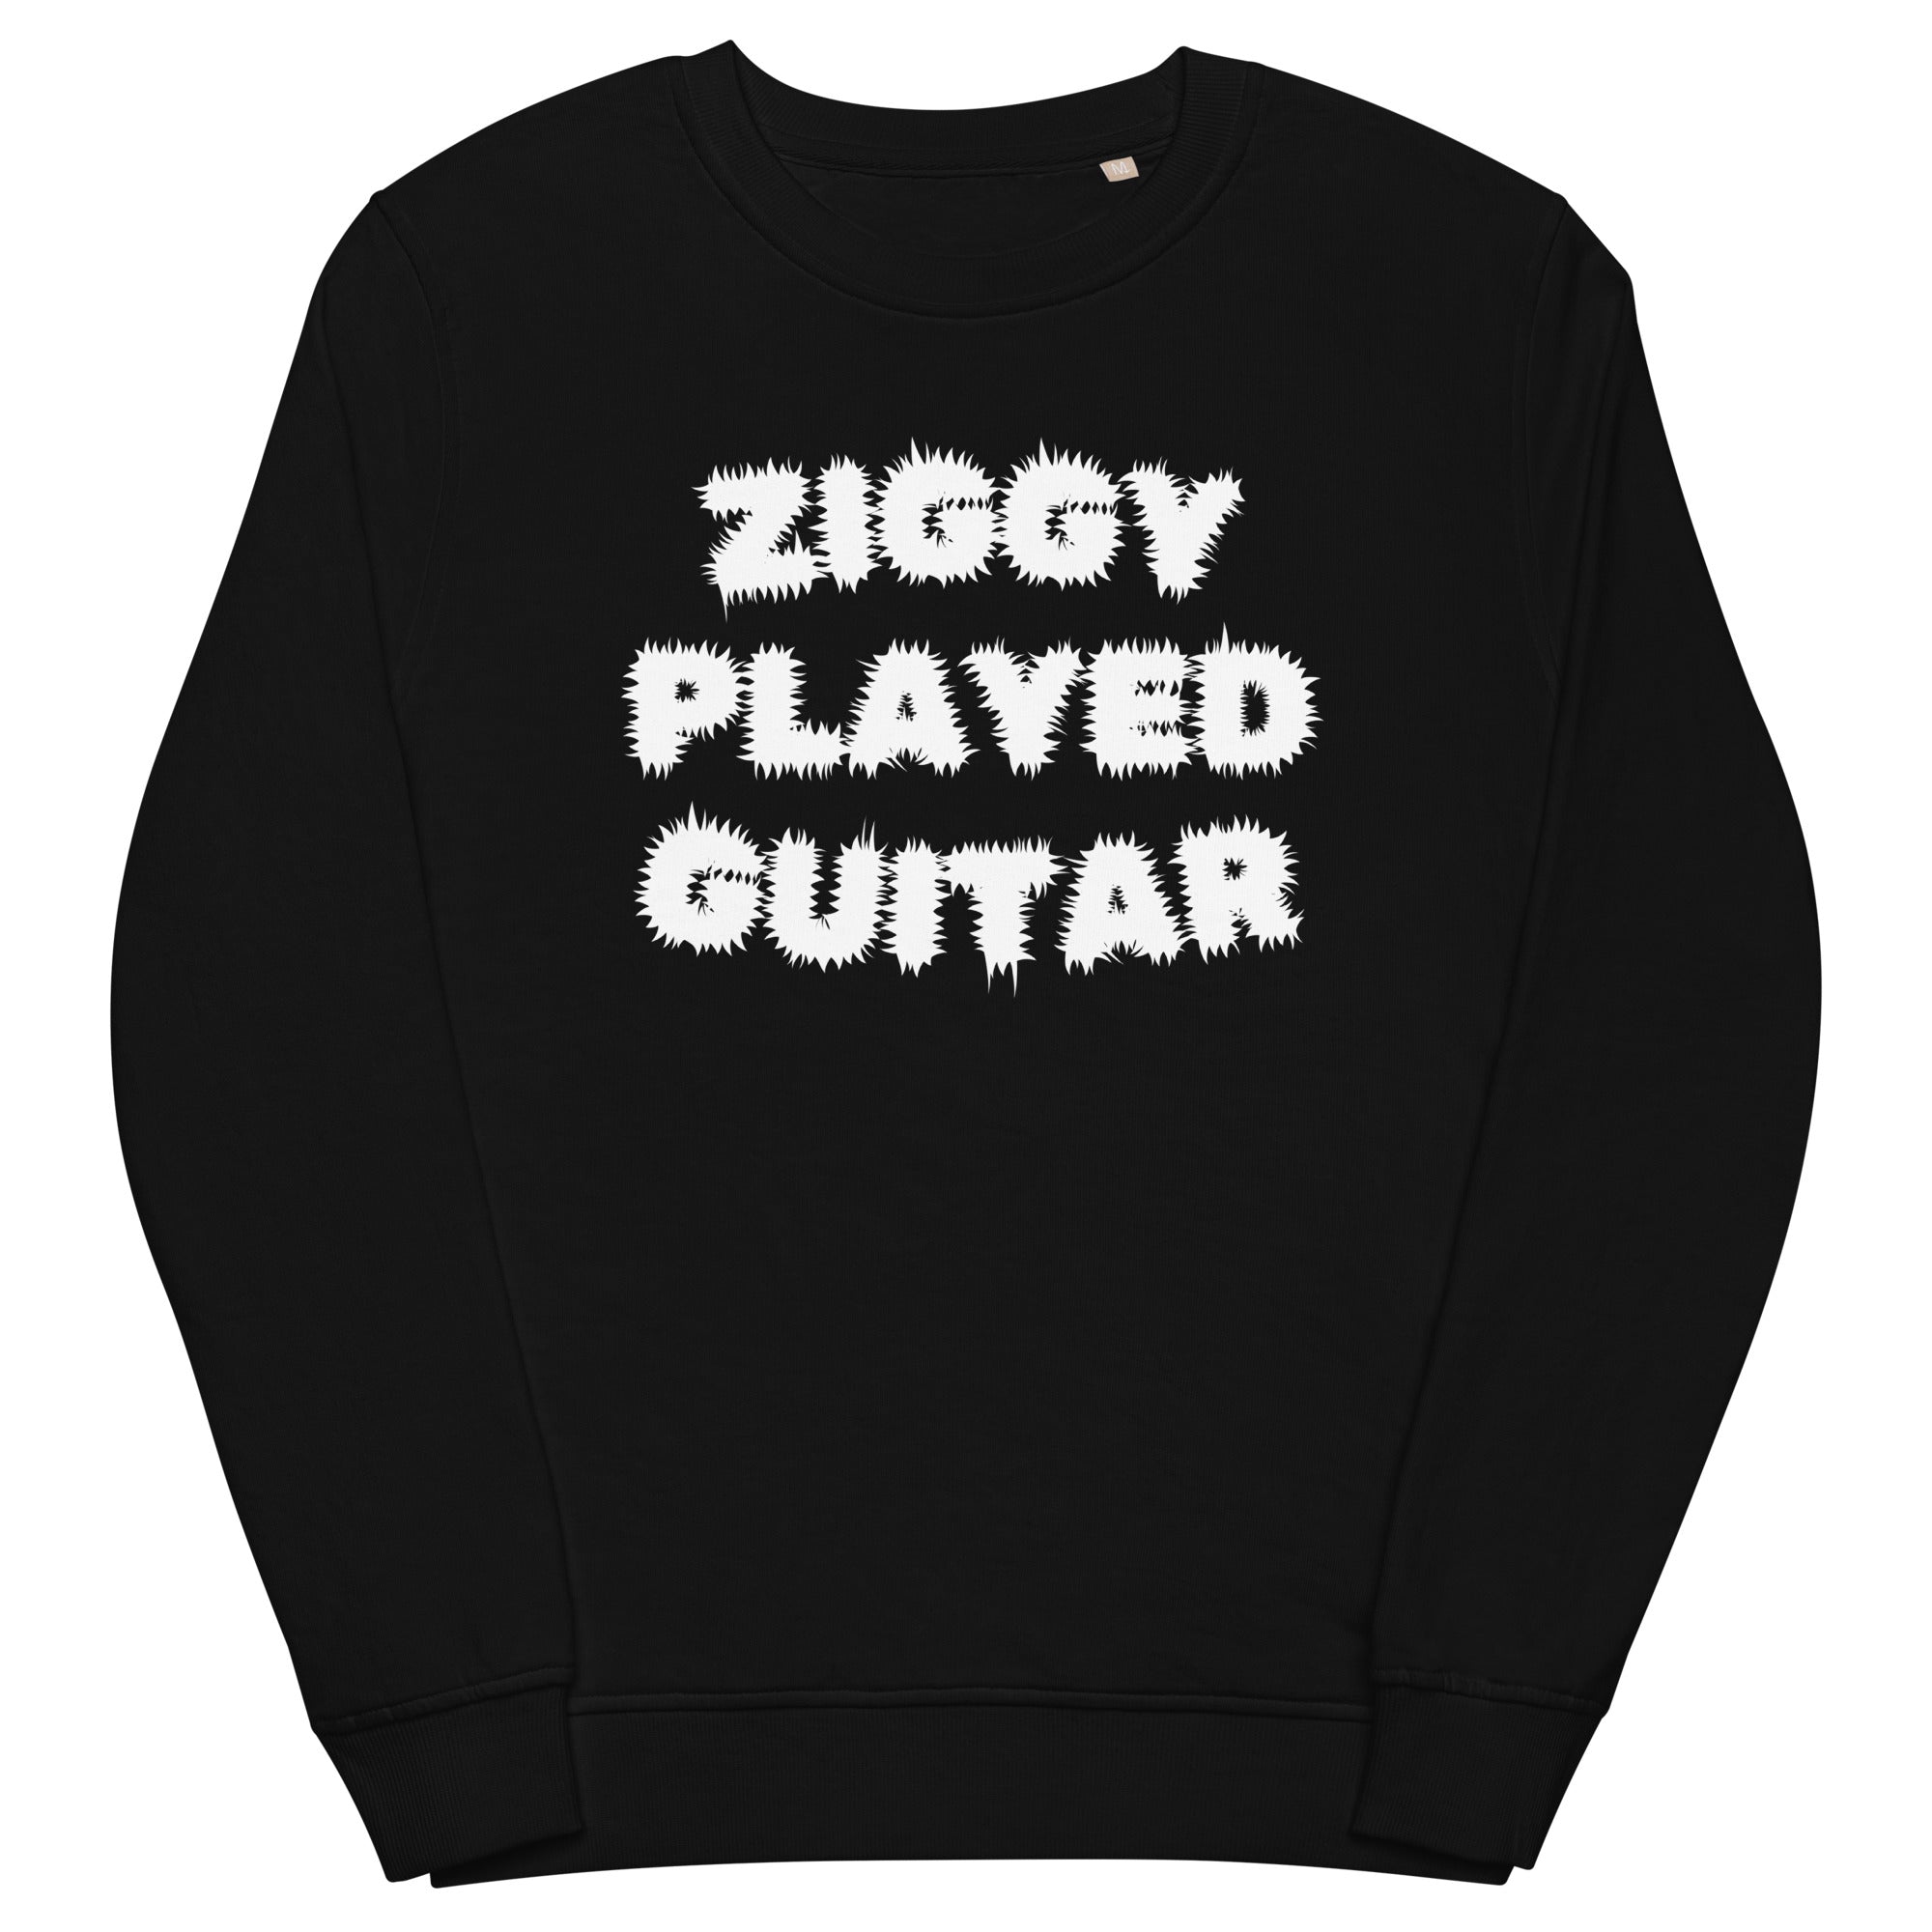 Ziggy Played Guitar Premium Printed Unisex Organic Sweatshirt - White print